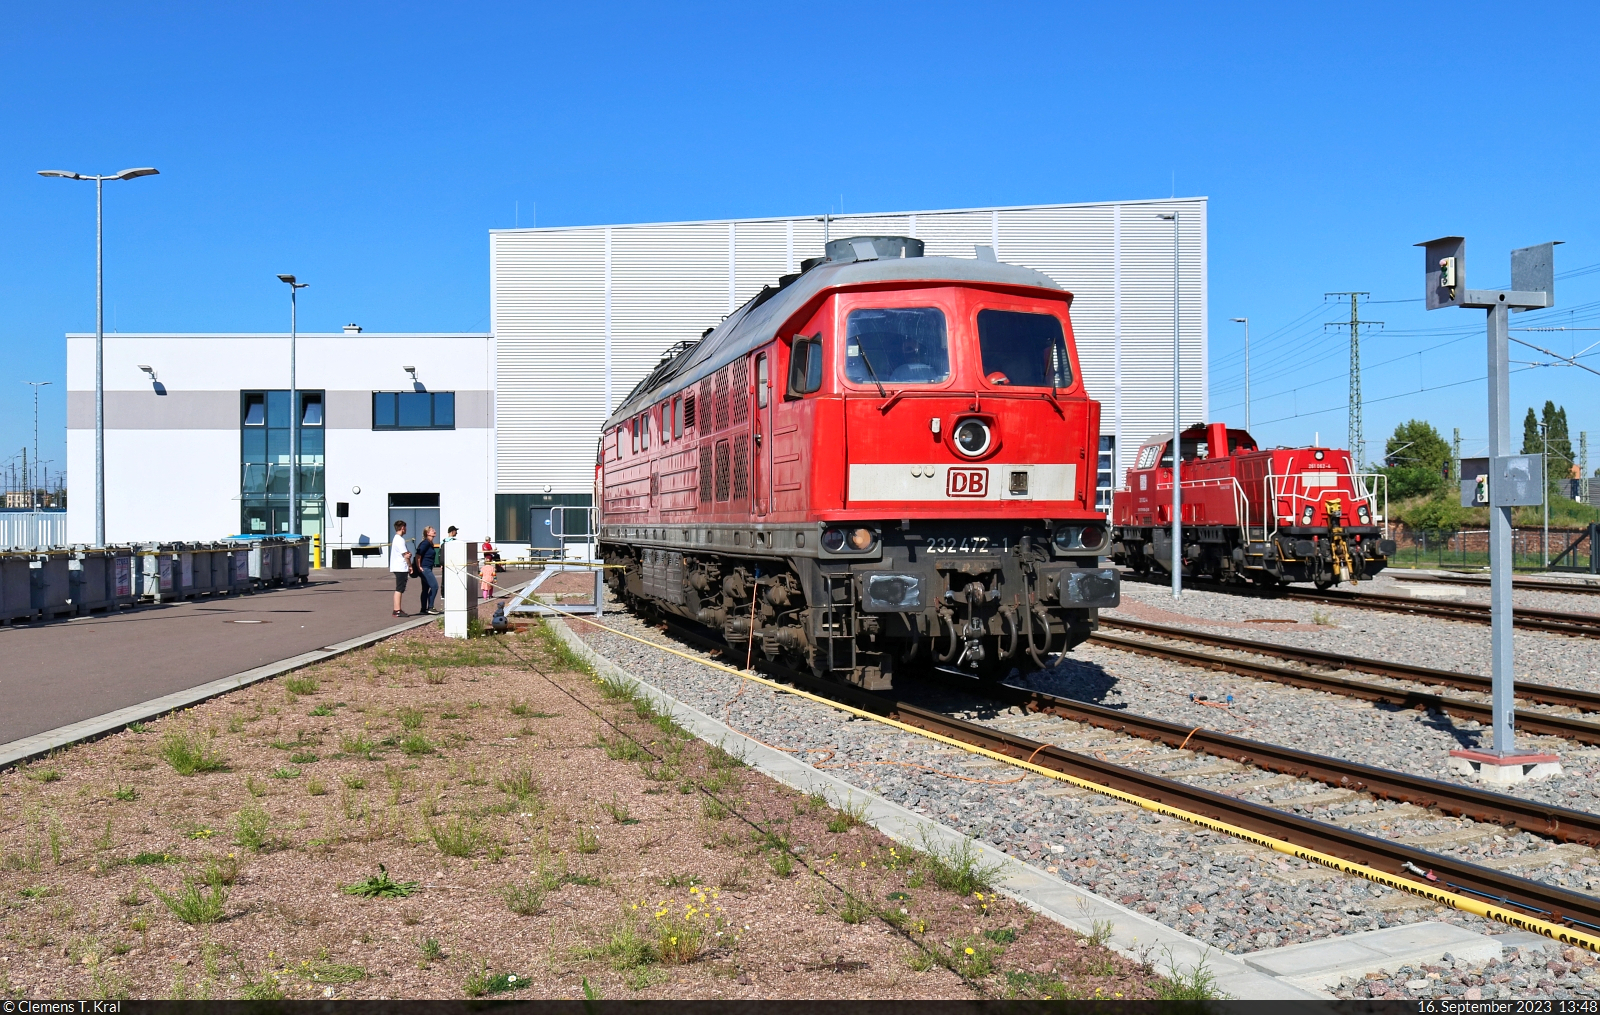 Standesgemäß begrüßte eine Ludmilla die Besucher vor der Lokwerkstatt von DB Cargo in Halle (Saale). Dafür hatte man 232 472-1 (132 472-2) hingestellt. Anlass war der bundesweite Tag der Schiene.

🧰 DB Cargo
🕓 16.9.2023 | 13:48 Uhr